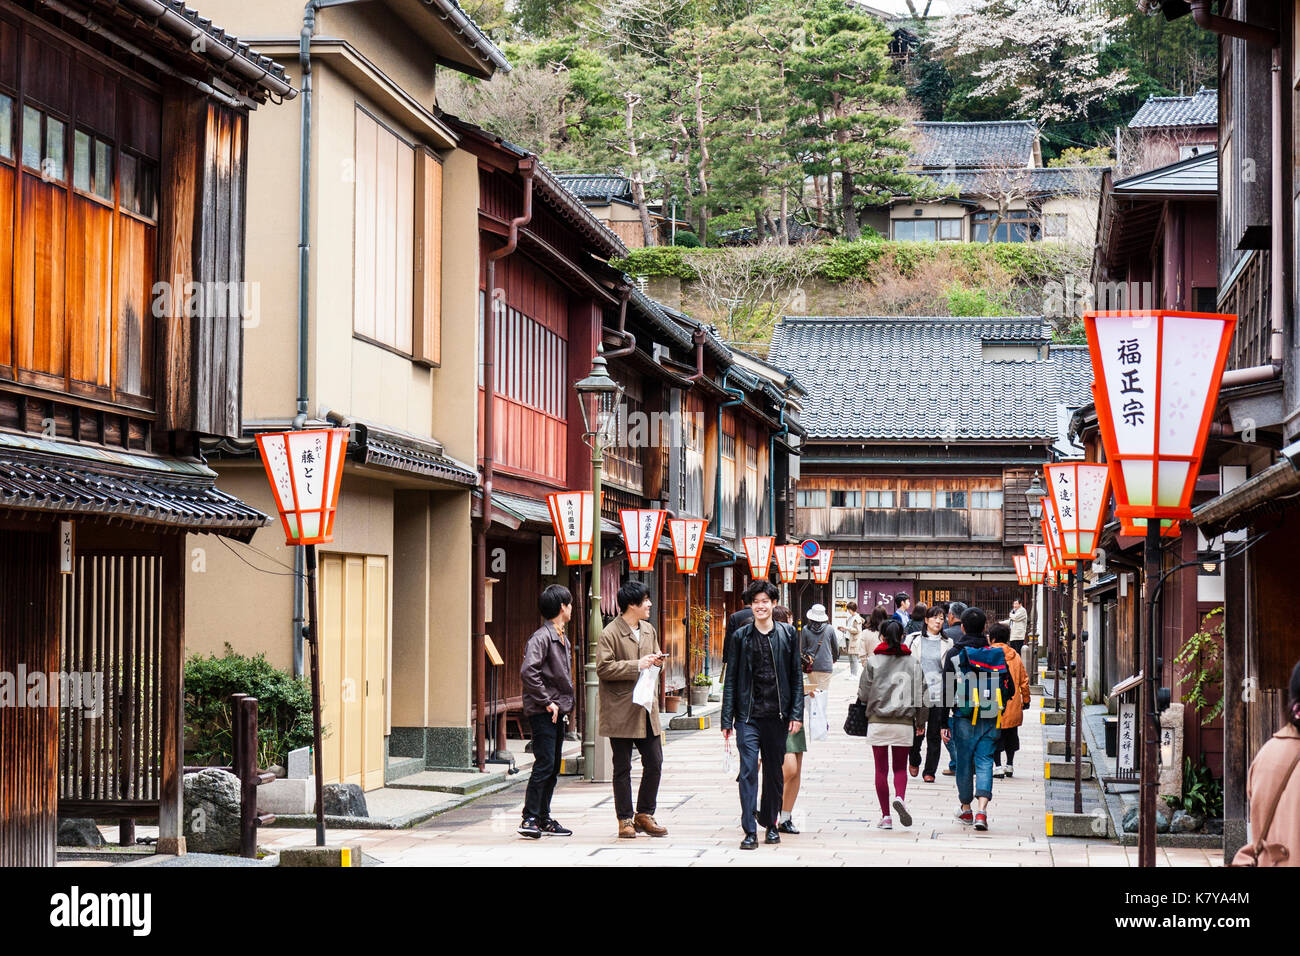 Beliebtes Ausflugsziel, Higashi Chaya Bezirk in Kanazawa. Strasse gesäumt auf beiden Seiten mit Edo periode Gebäude aus Holz, Ryokan, Geschäfte und Gaststätten. Stockfoto